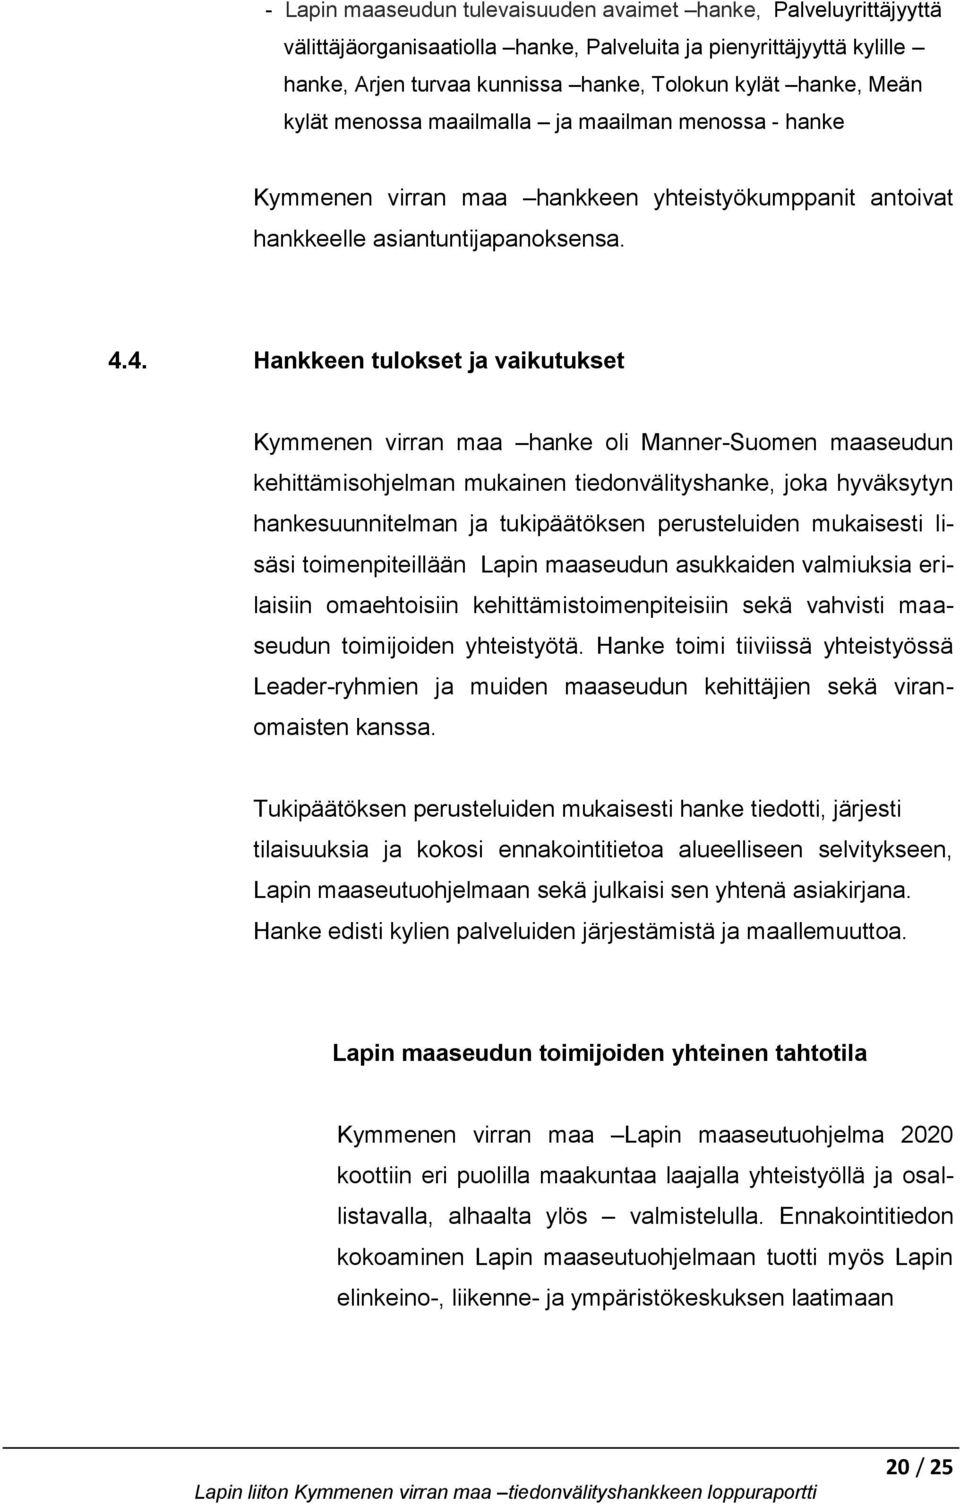 4. Hankkeen tulokset ja vaikutukset Kymmenen virran maa hanke oli Manner-Suomen maaseudun kehittämisohjelman mukainen tiedonvälityshanke, joka hyväksytyn hankesuunnitelman ja tukipäätöksen